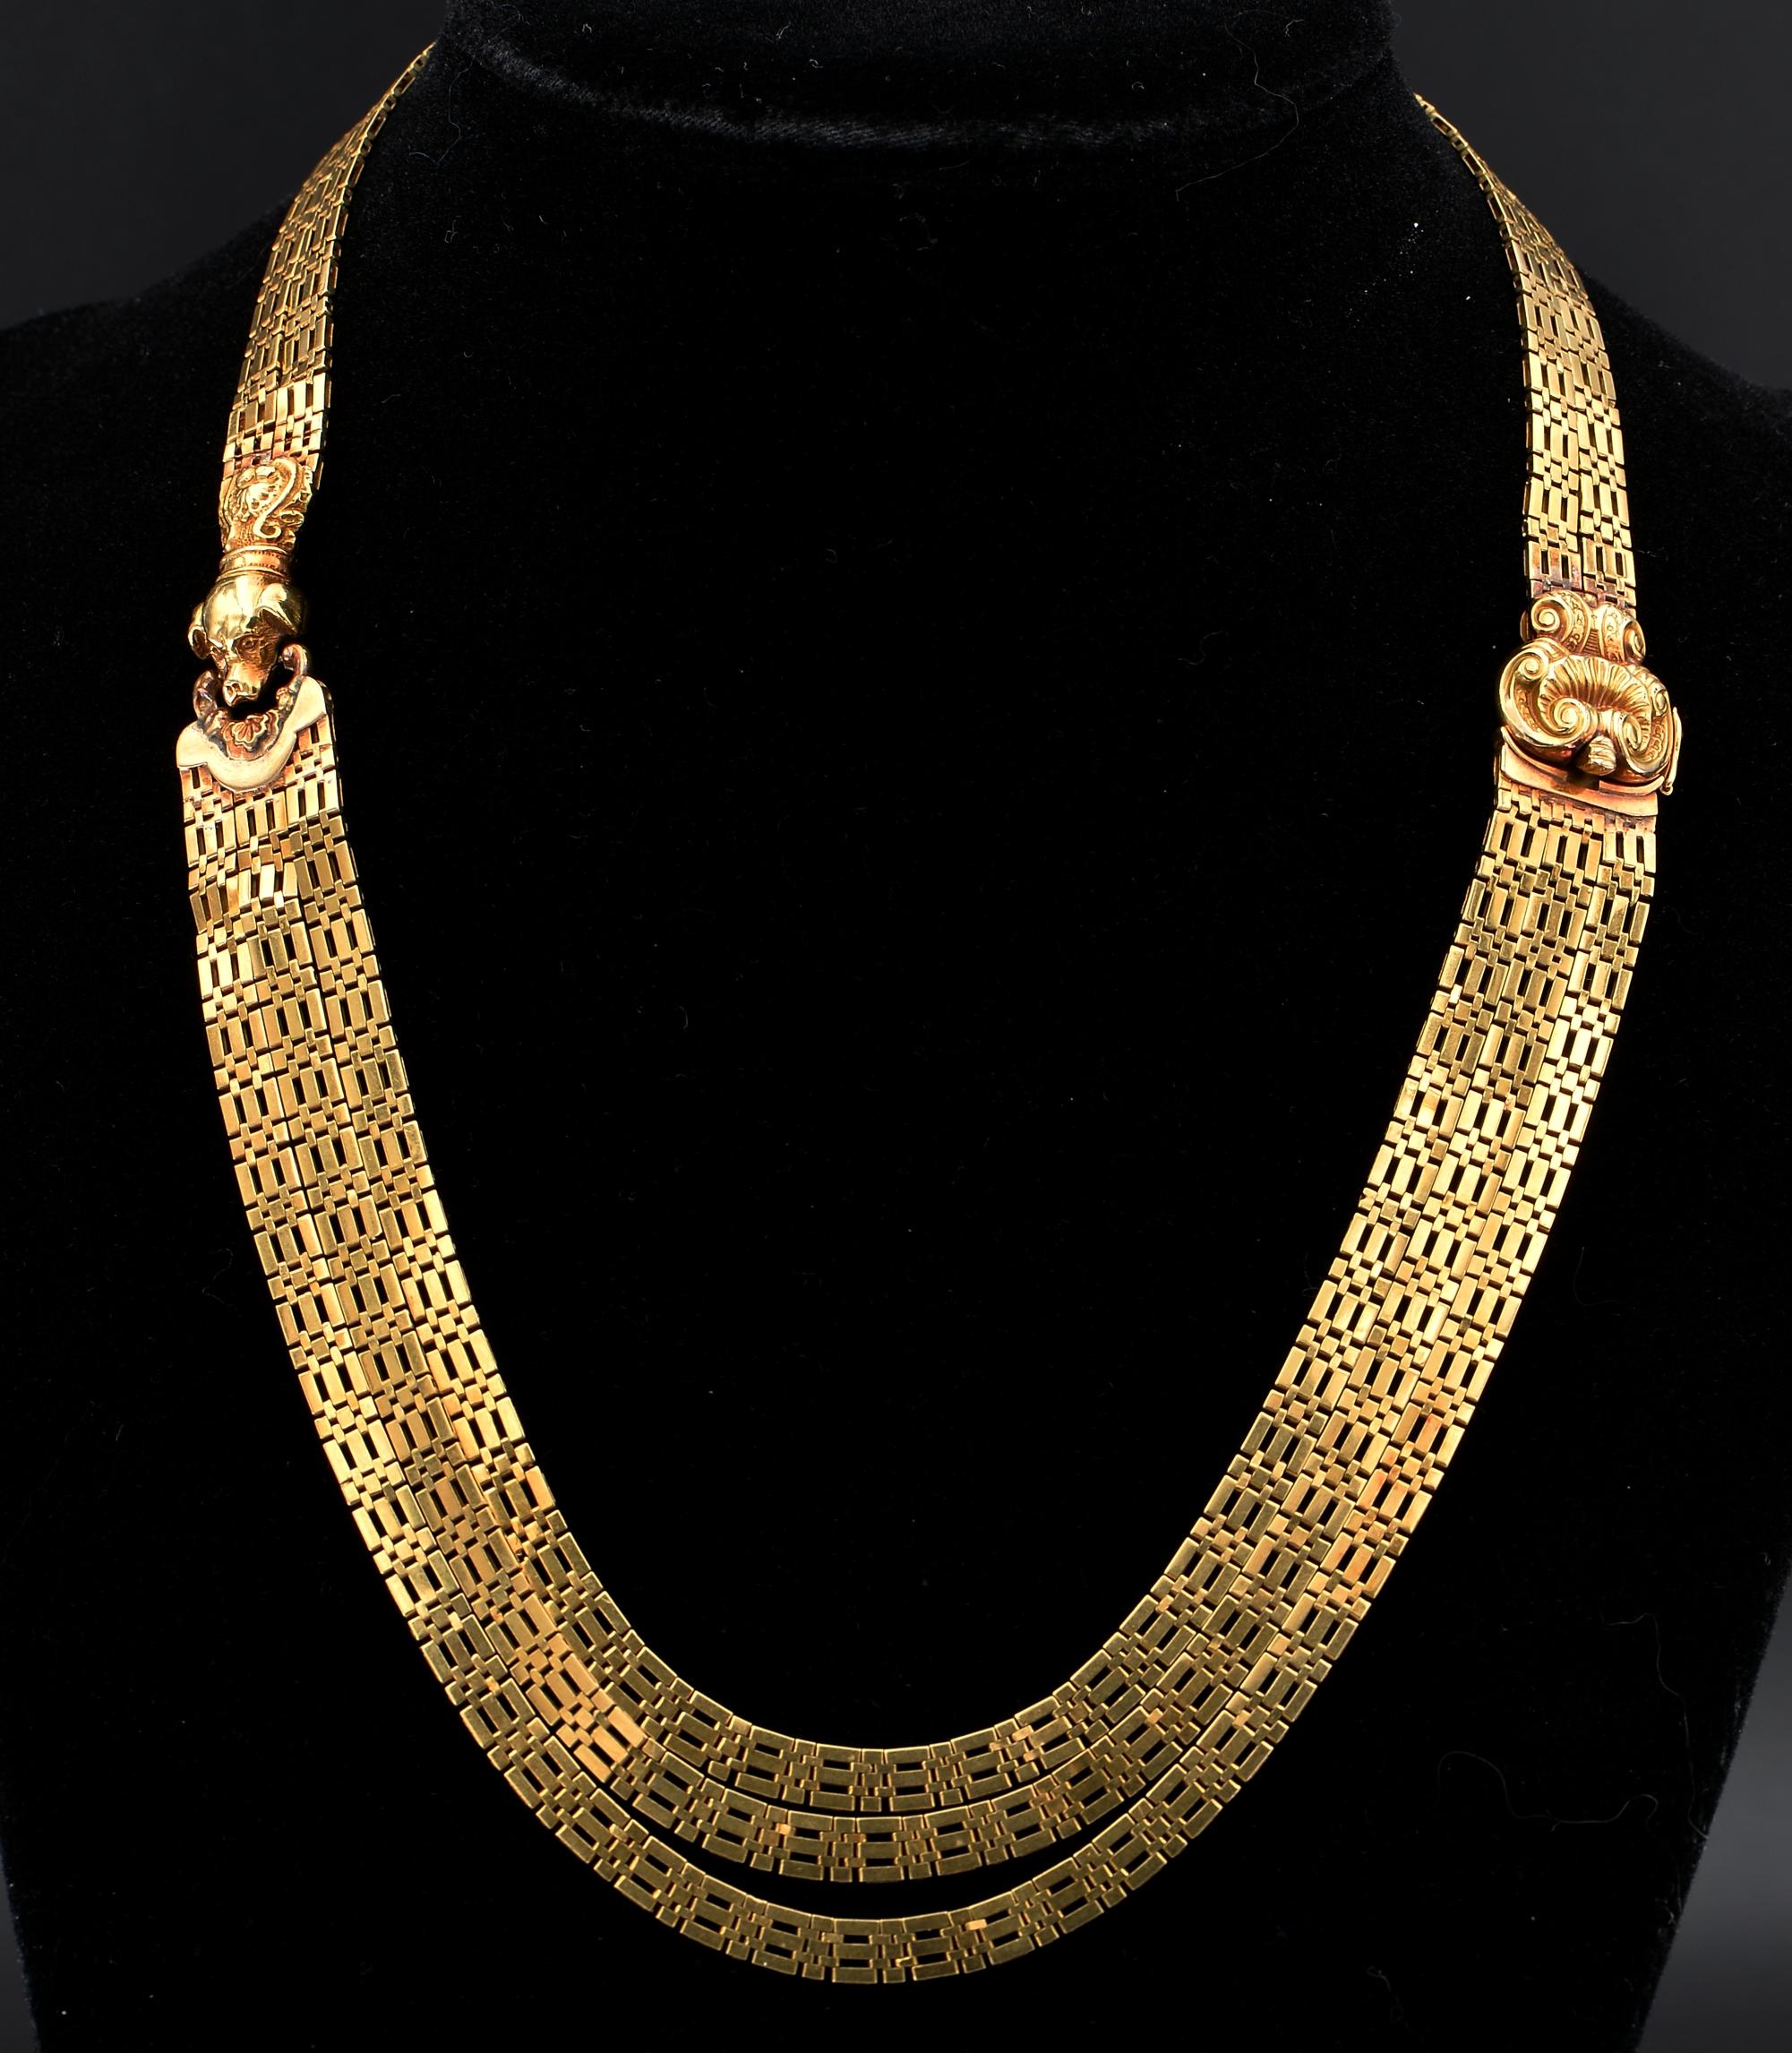 Seltener Fund
Eine außergewöhnliche antike Halskette aus Gold von 1820, handgefertigt in der Zeit aus massivem 18 kt Gold - getestet
Seltenes Design, bestehend aus exquisiten, flach geformten Gliedern im spektakulären griechischen Schlüssel-Design -